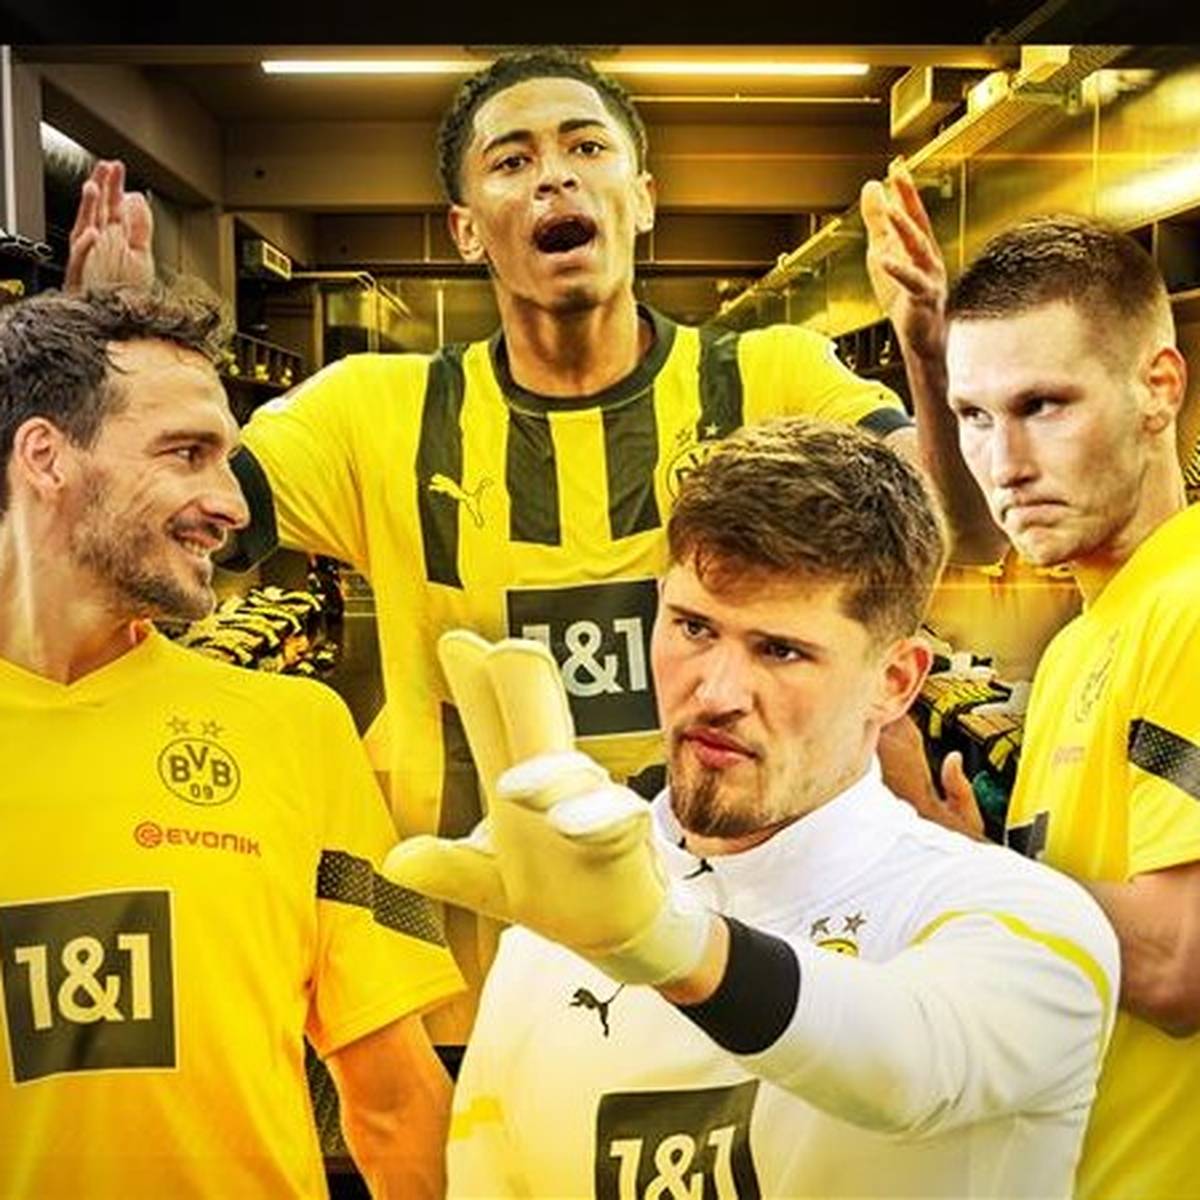 Mit Witsel und Akanji werden zwei Führungsspieler Dortmund verlassen. SPORT1 erklärt, welche Akteure ihre Rollen übernehmen könnten - darunter kommen auch zwei Neuzugänge infrage.